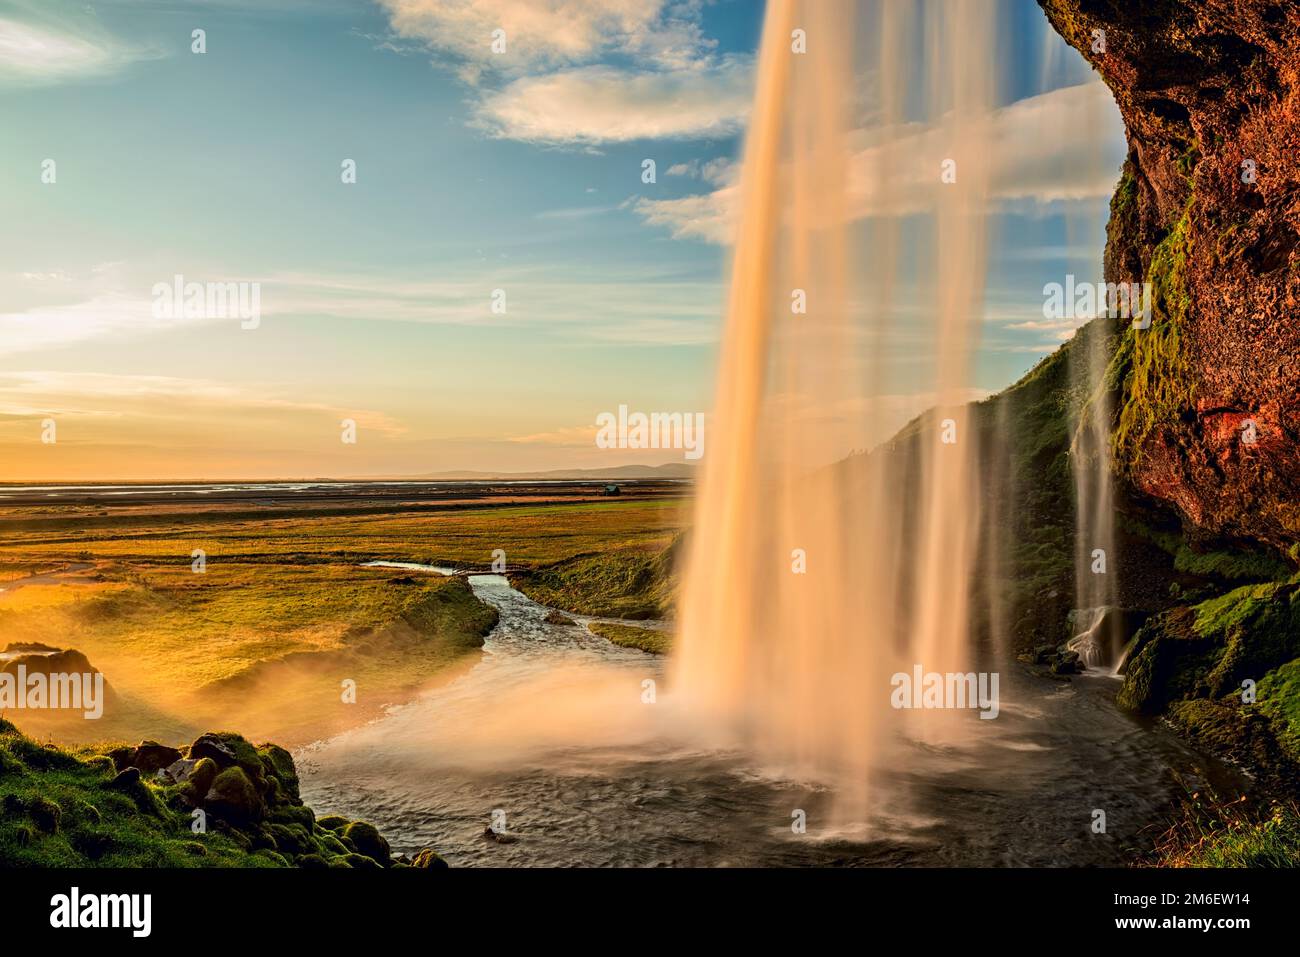 Seljalandsfoss waterfall at sunset, Iceland Stock Photo